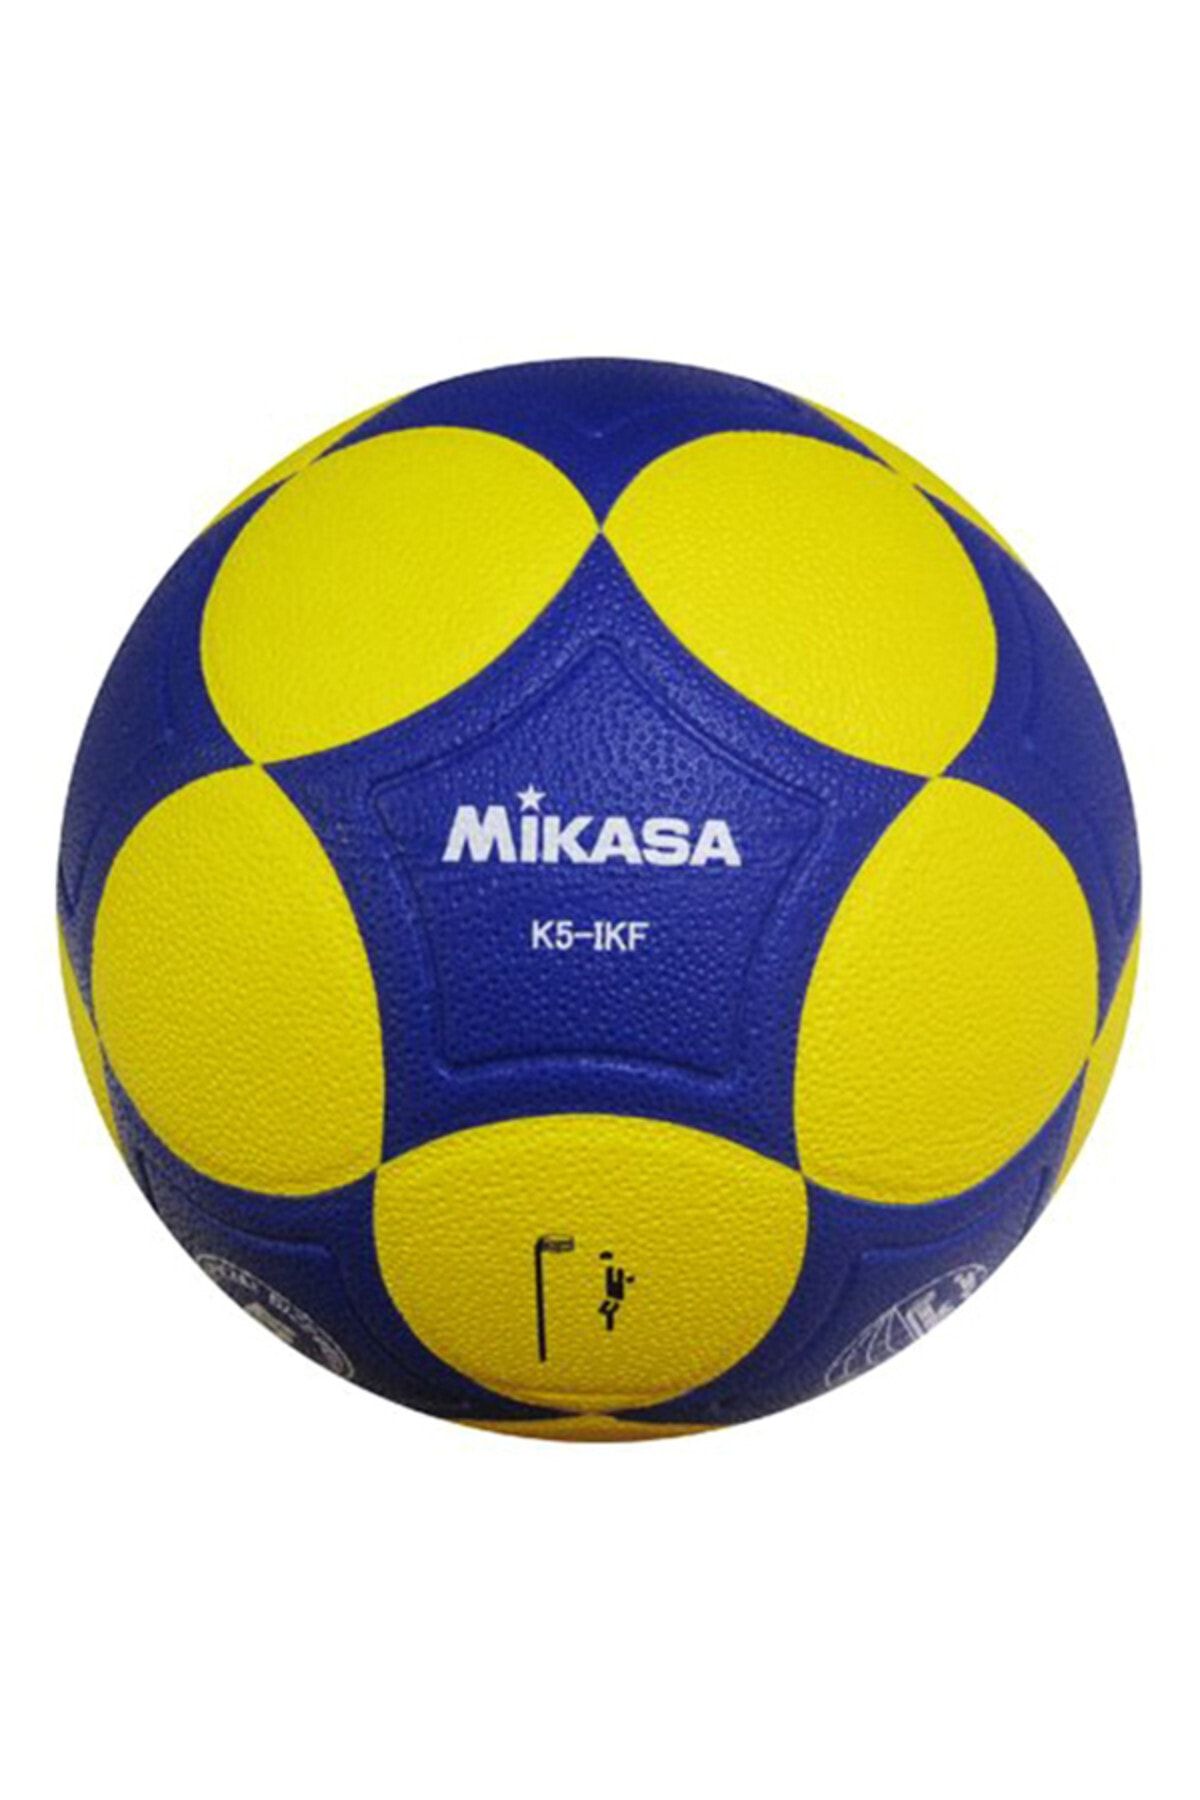 MIKASA IKF Onaylı Korfbol Topu - K5-IKF